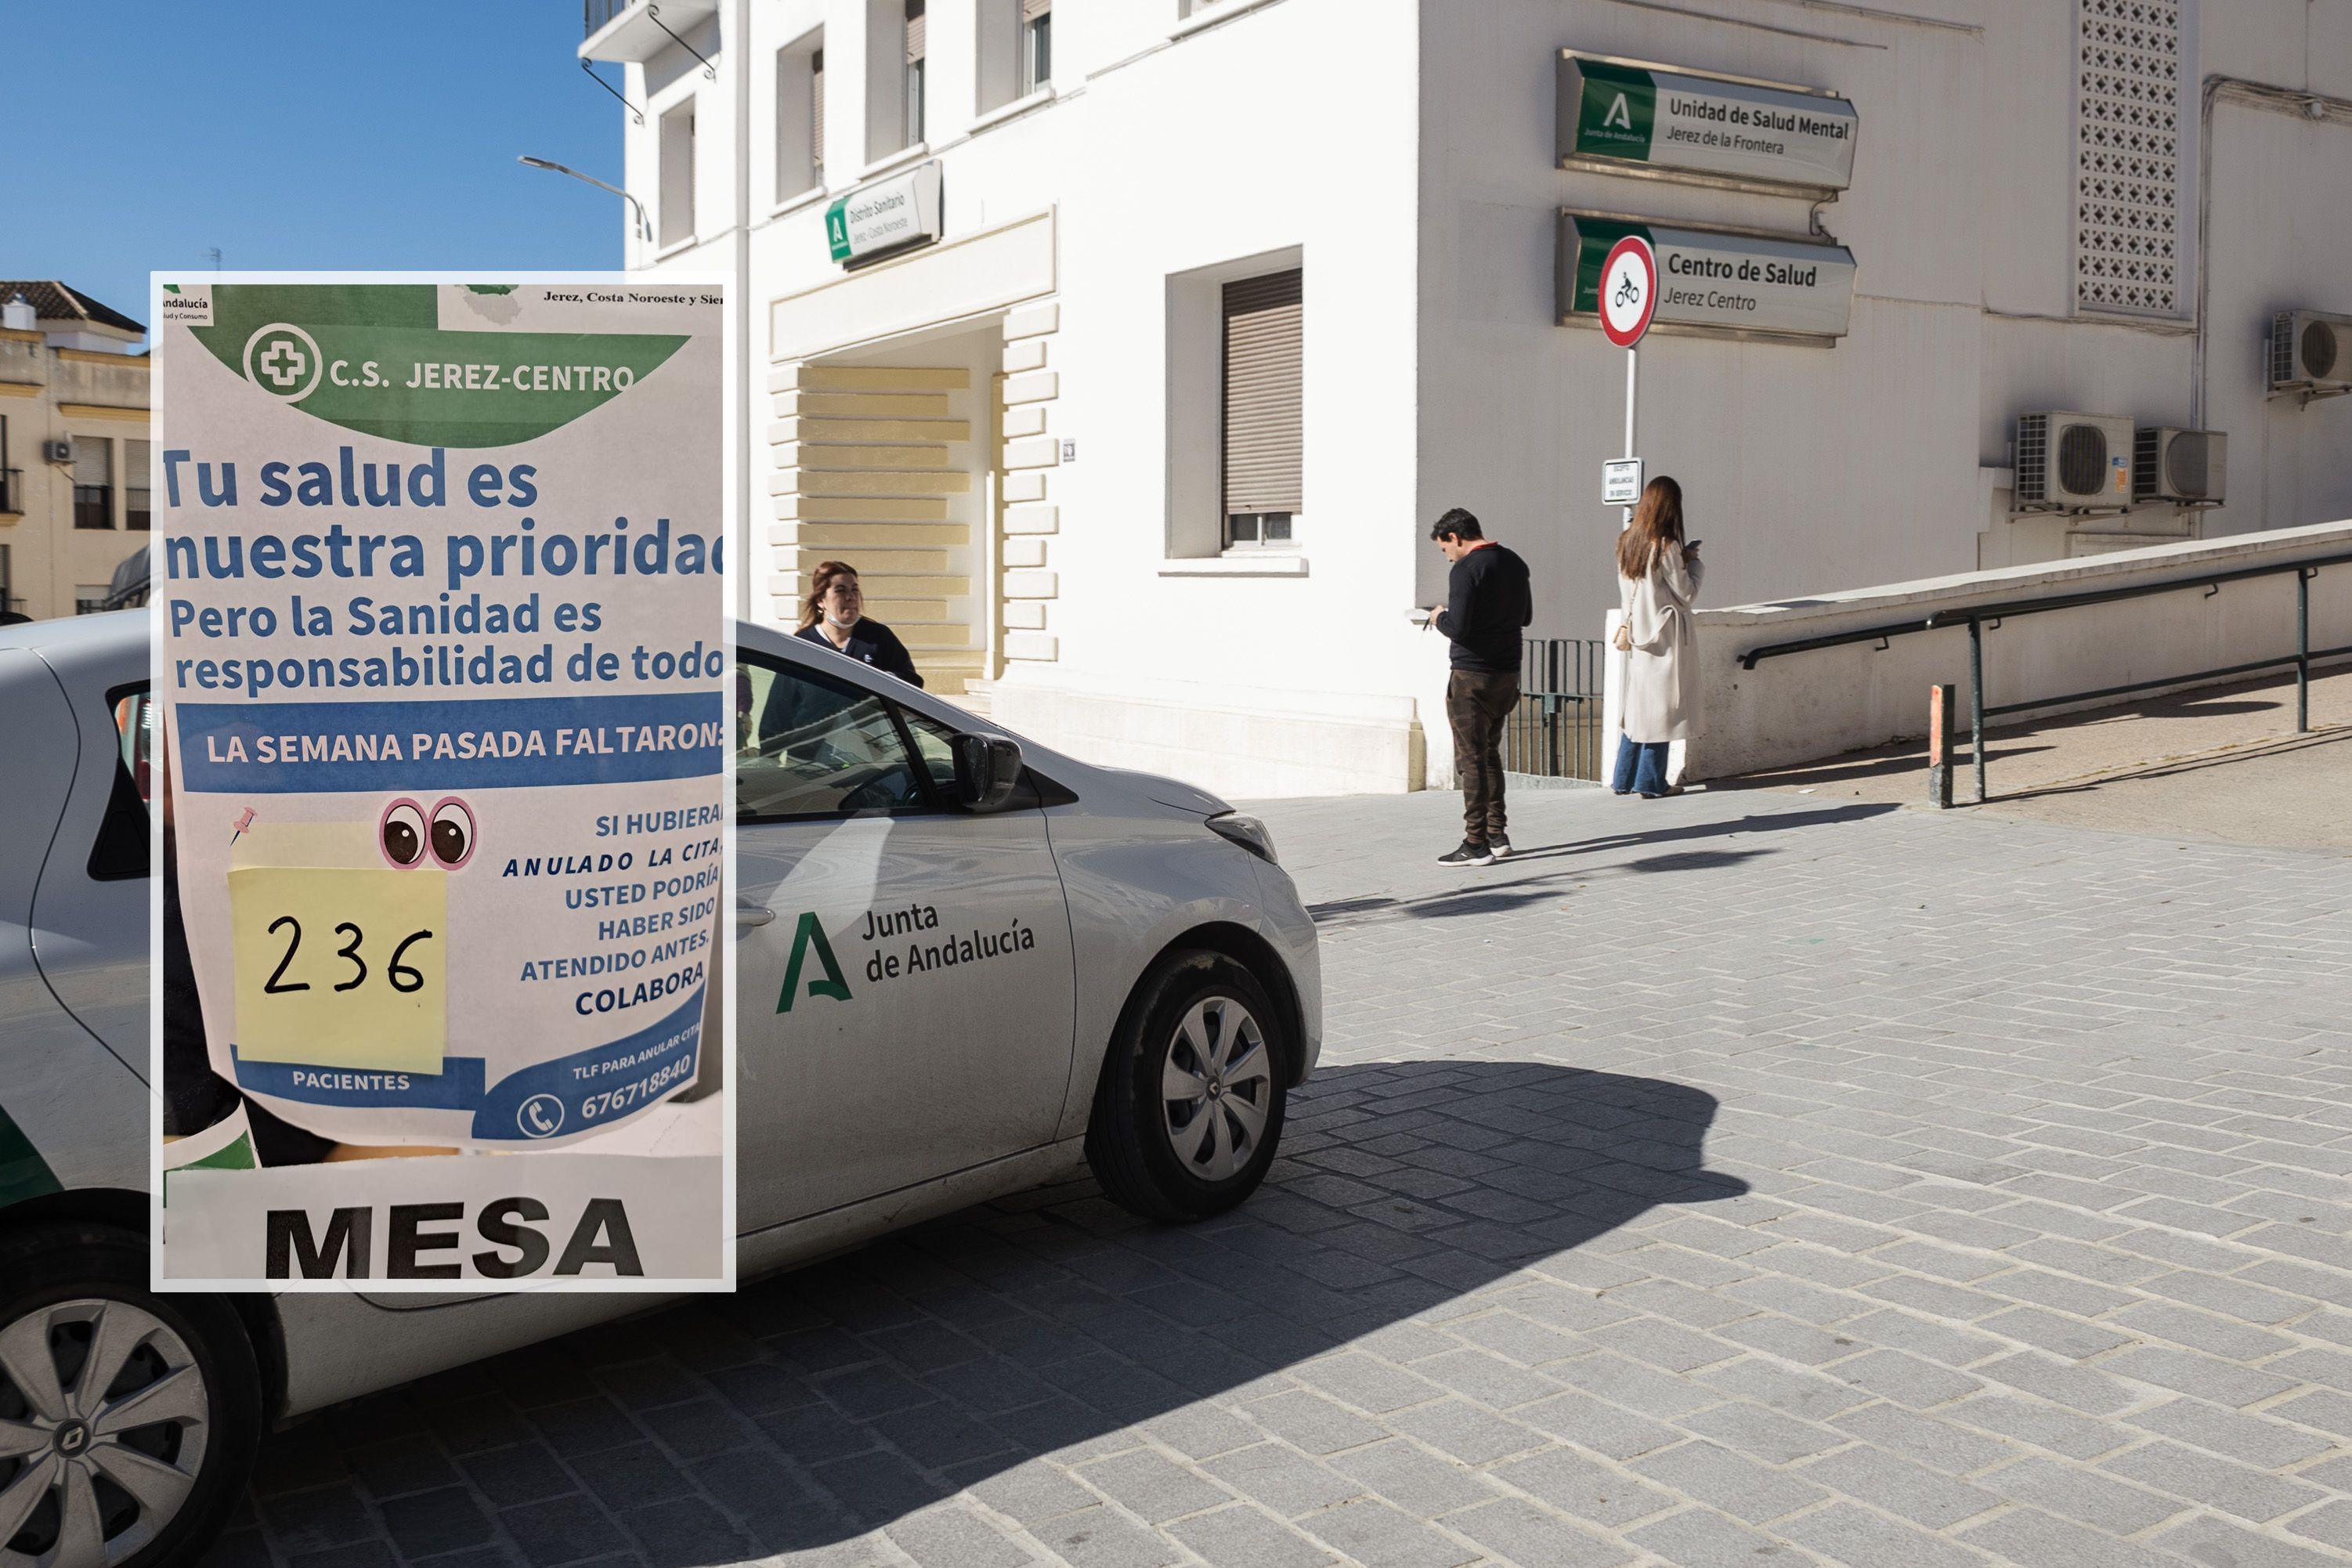 Imagen del centro de salud Jerez-Centro, con el cartel interior sobreimpresionado.